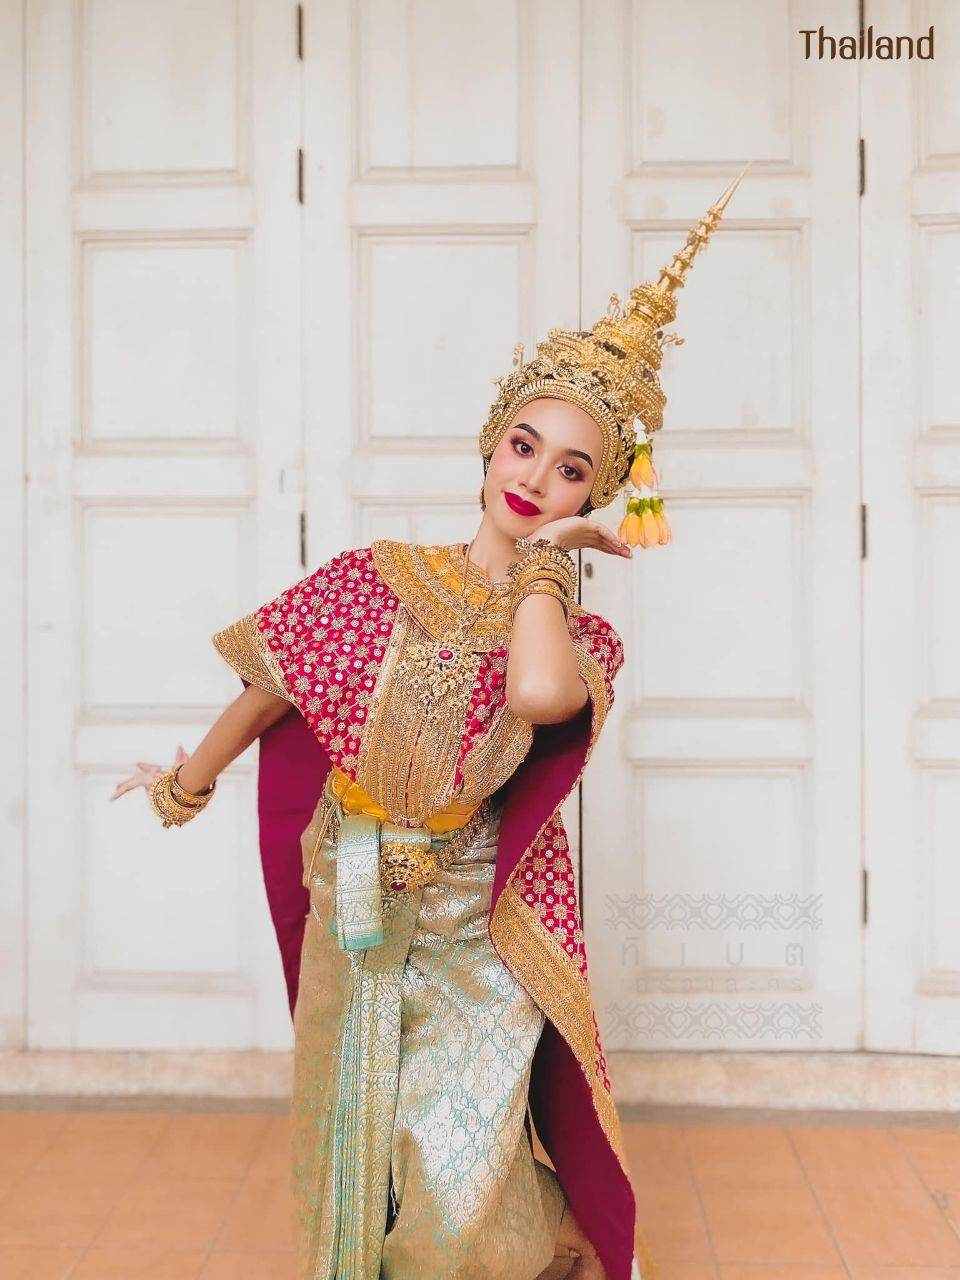 THAILAND 🇹🇭 | Khon masked dance drama in Thailand